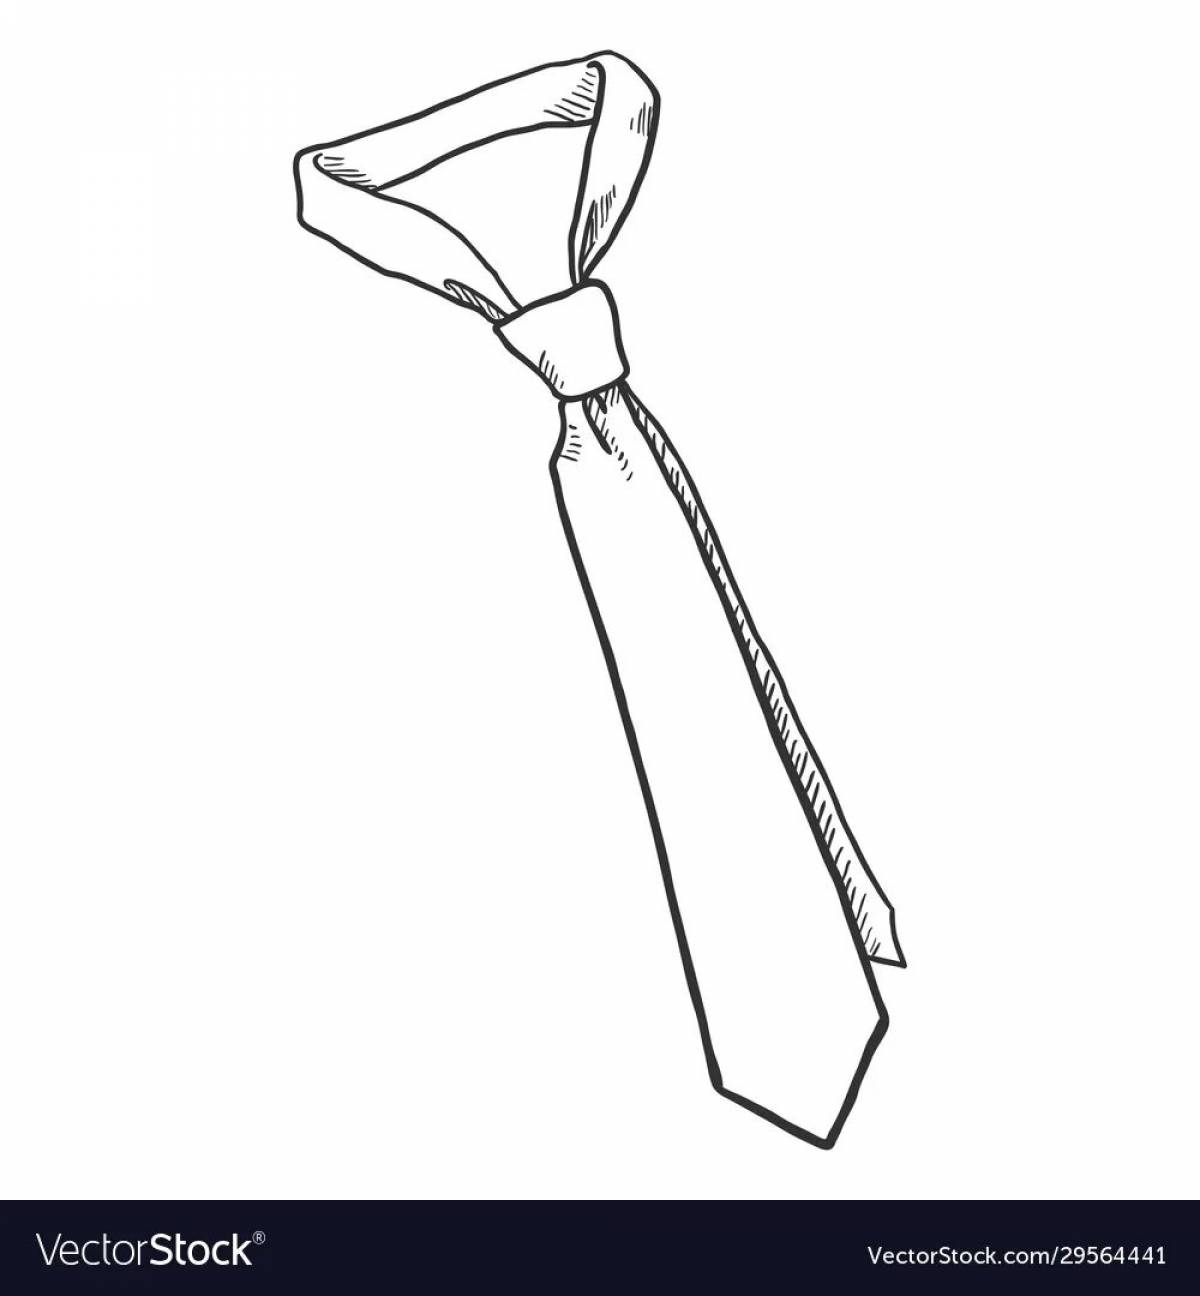 Про мужские галстуки » Определяем характер по галстуку